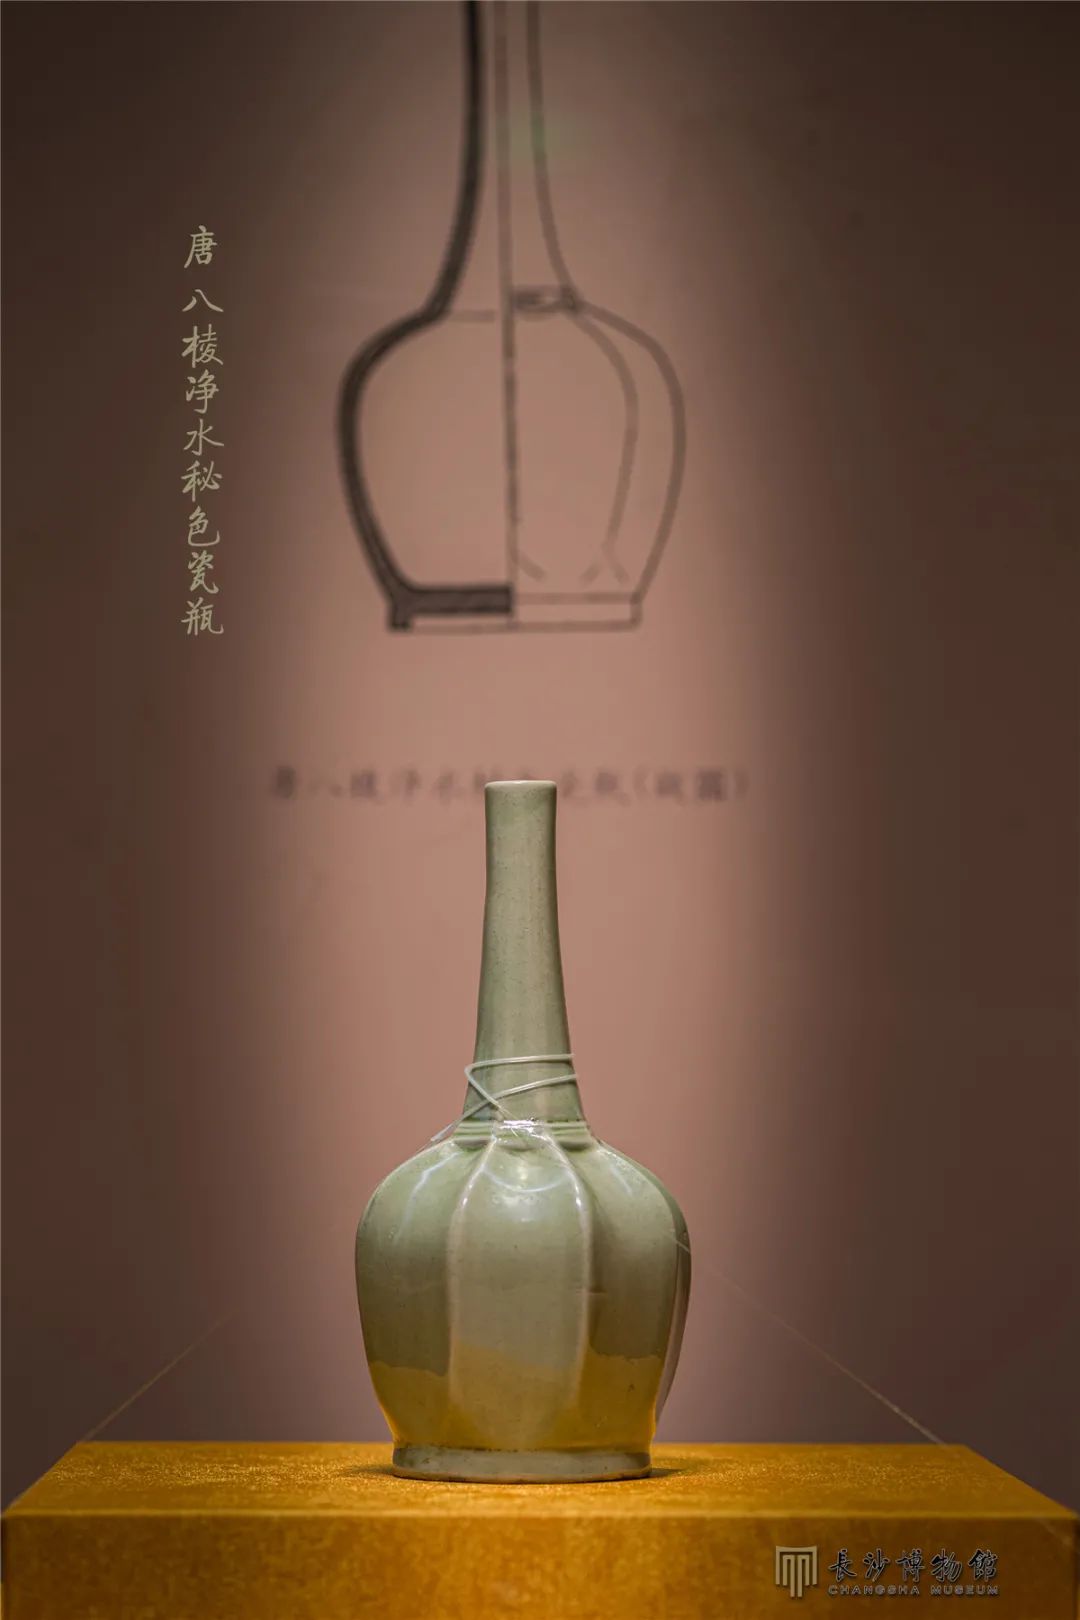 唐八棱净水秘色瓷瓶 外口径2.3厘米，高21.5厘米，腹径11厘米 1987年法门寺塔地宫出土 现藏法门寺博物馆